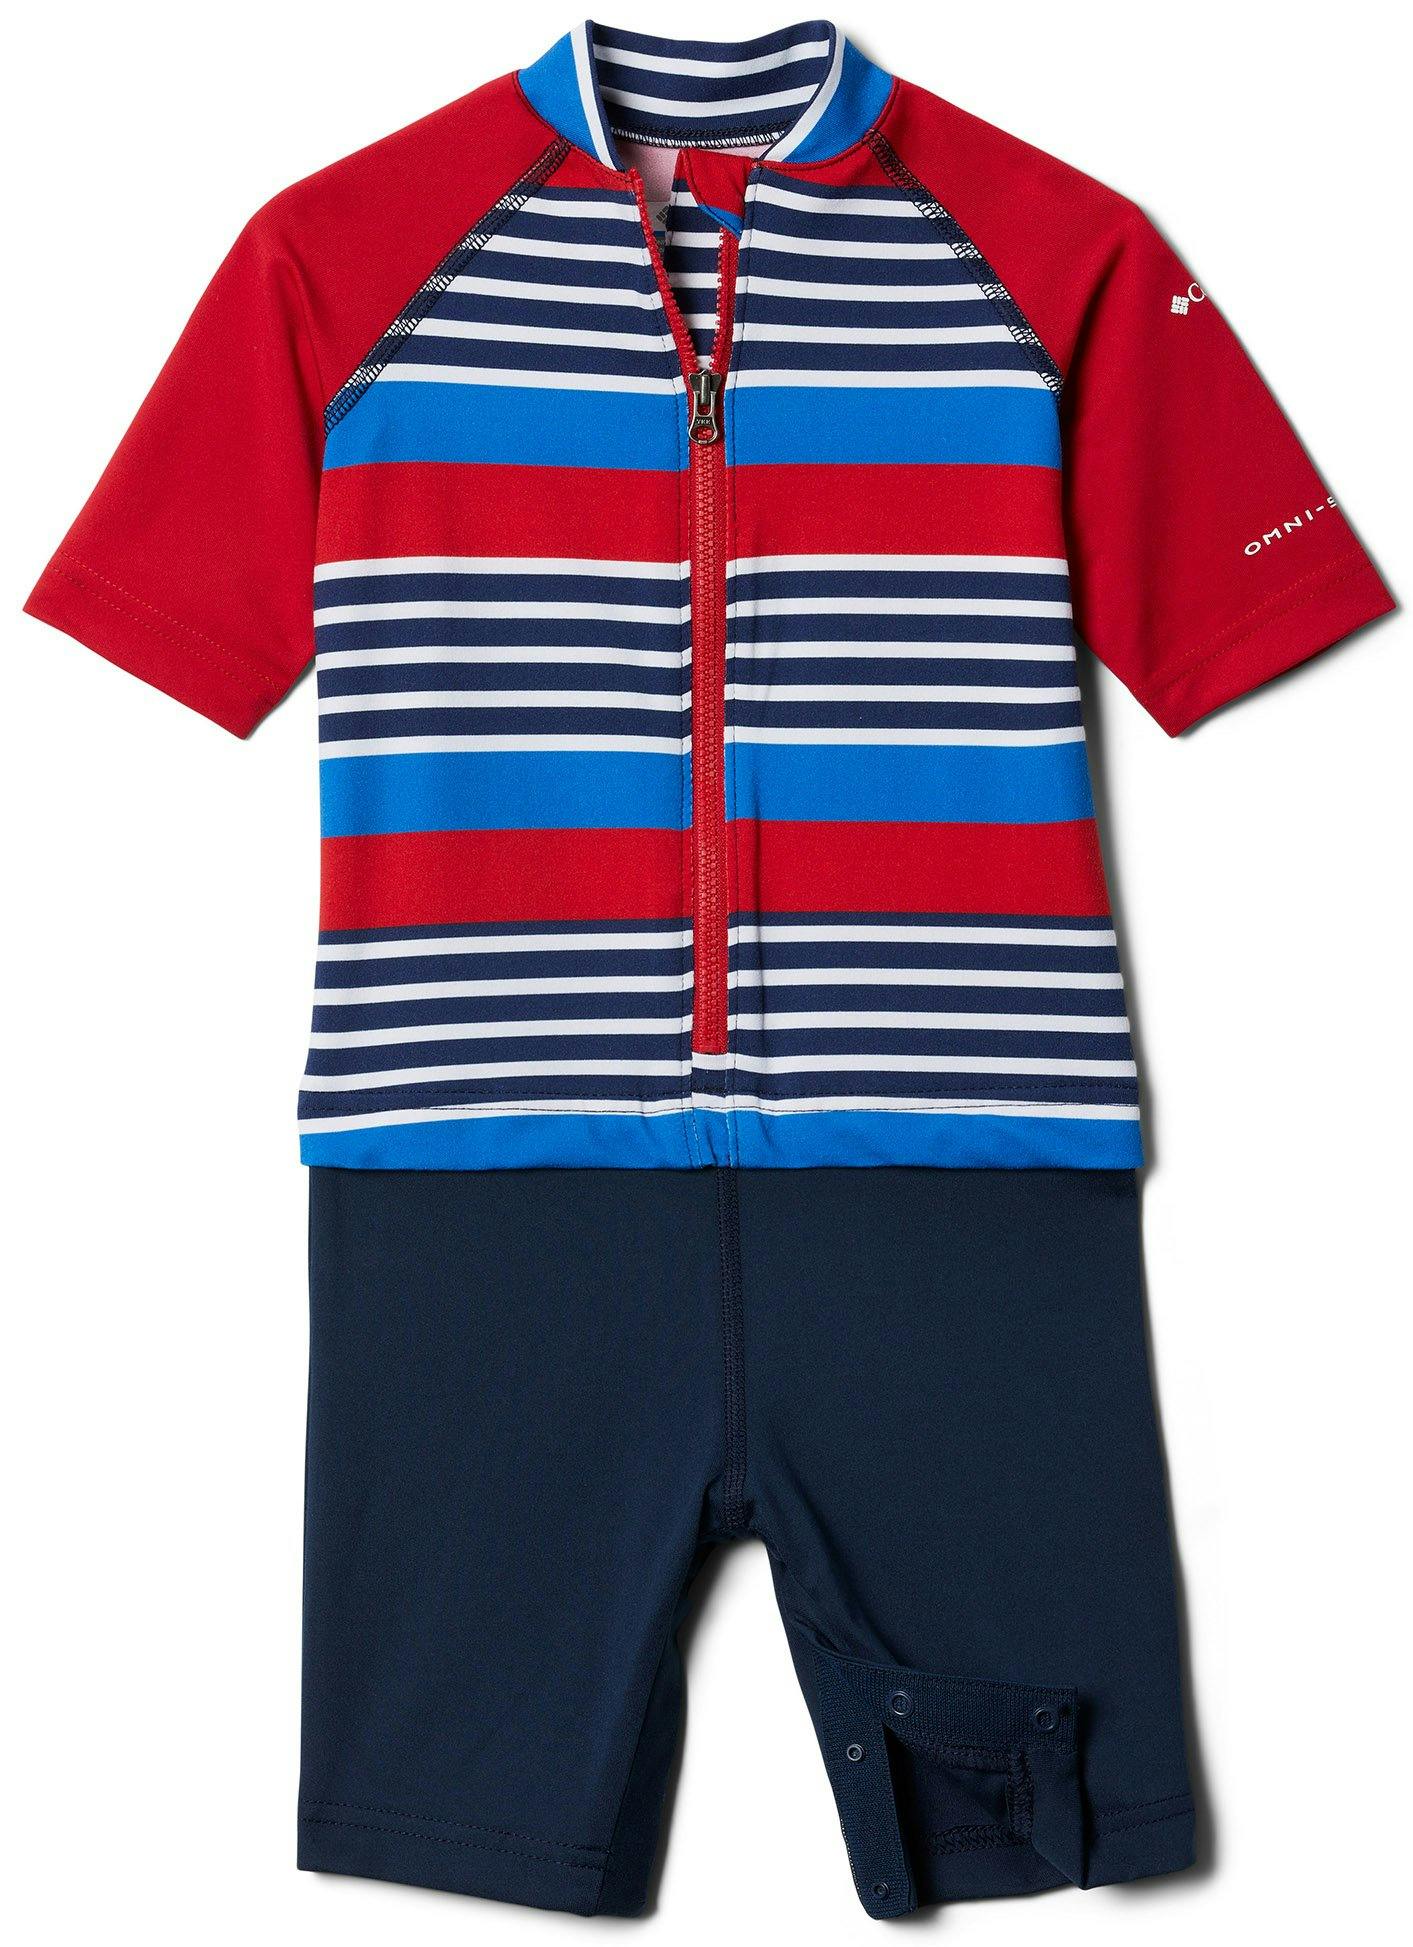 Product image for Sandy Shores Sunguard Suit - Infant